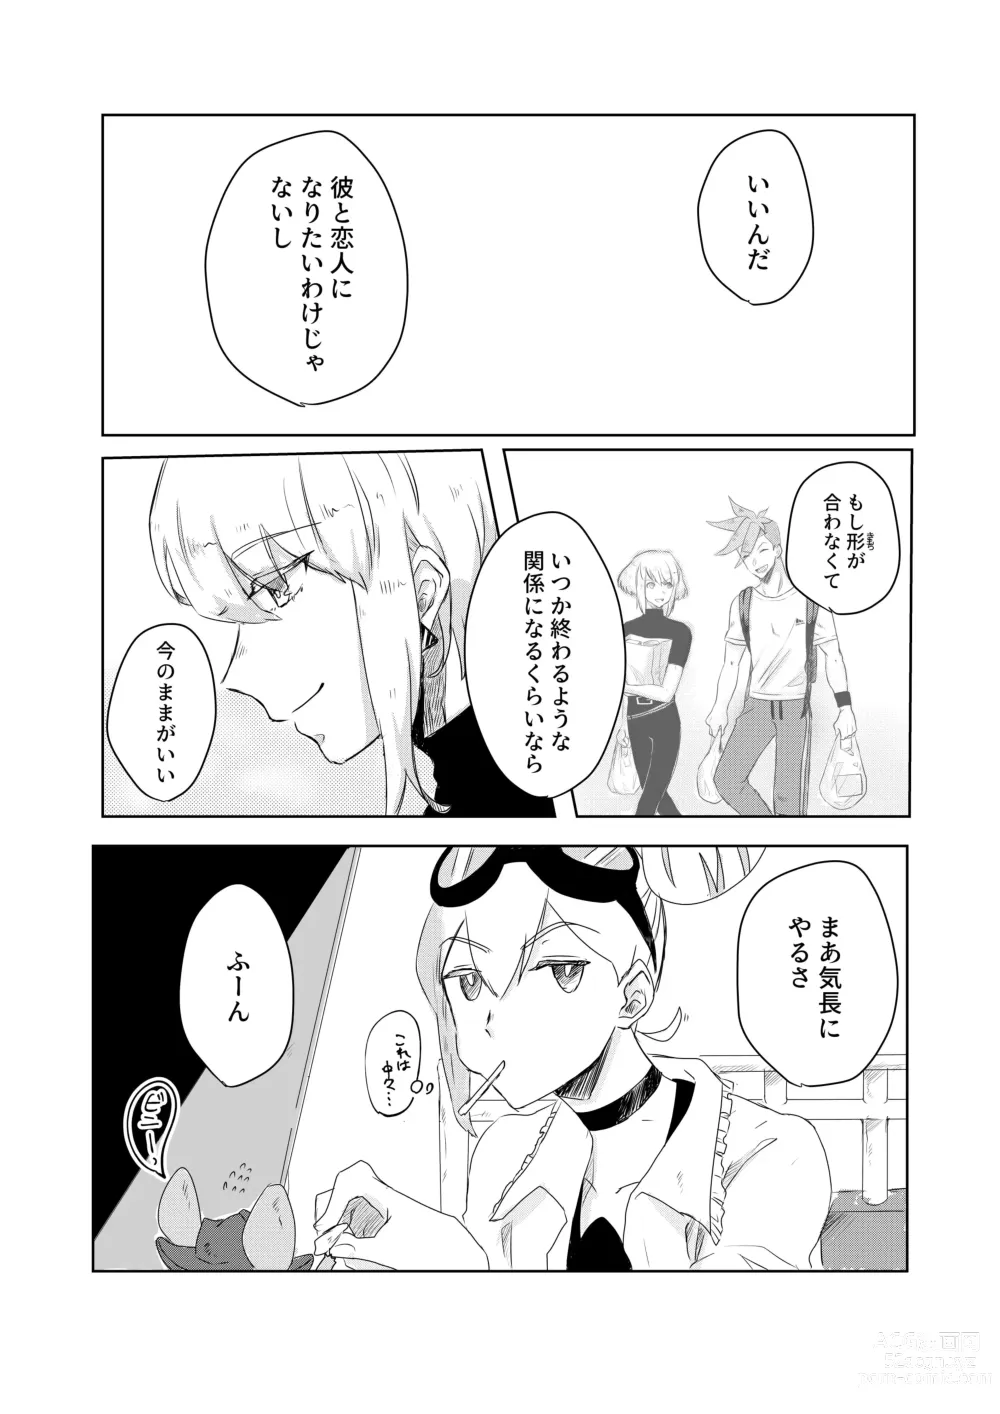 Page 18 of doujinshi Ohayou, Oyasumi, Mata Ashita.